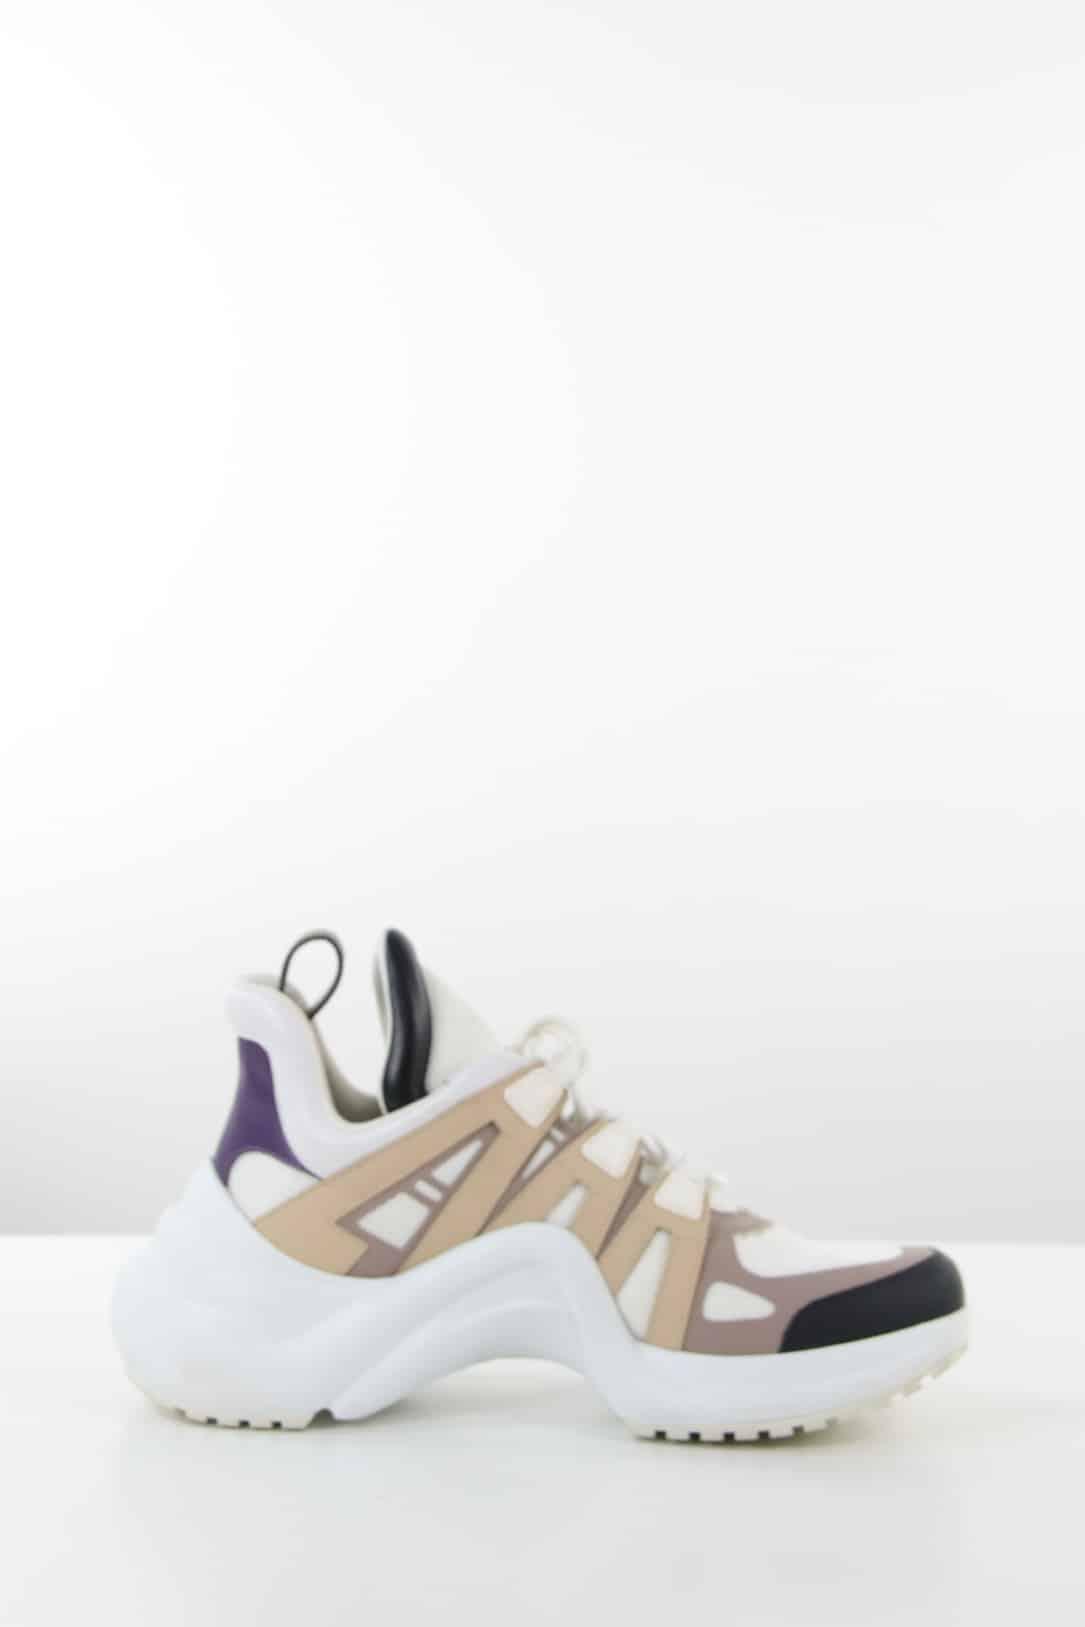 Bottes Louis Vuitton pour femme  Achat / Vente de chaussures de